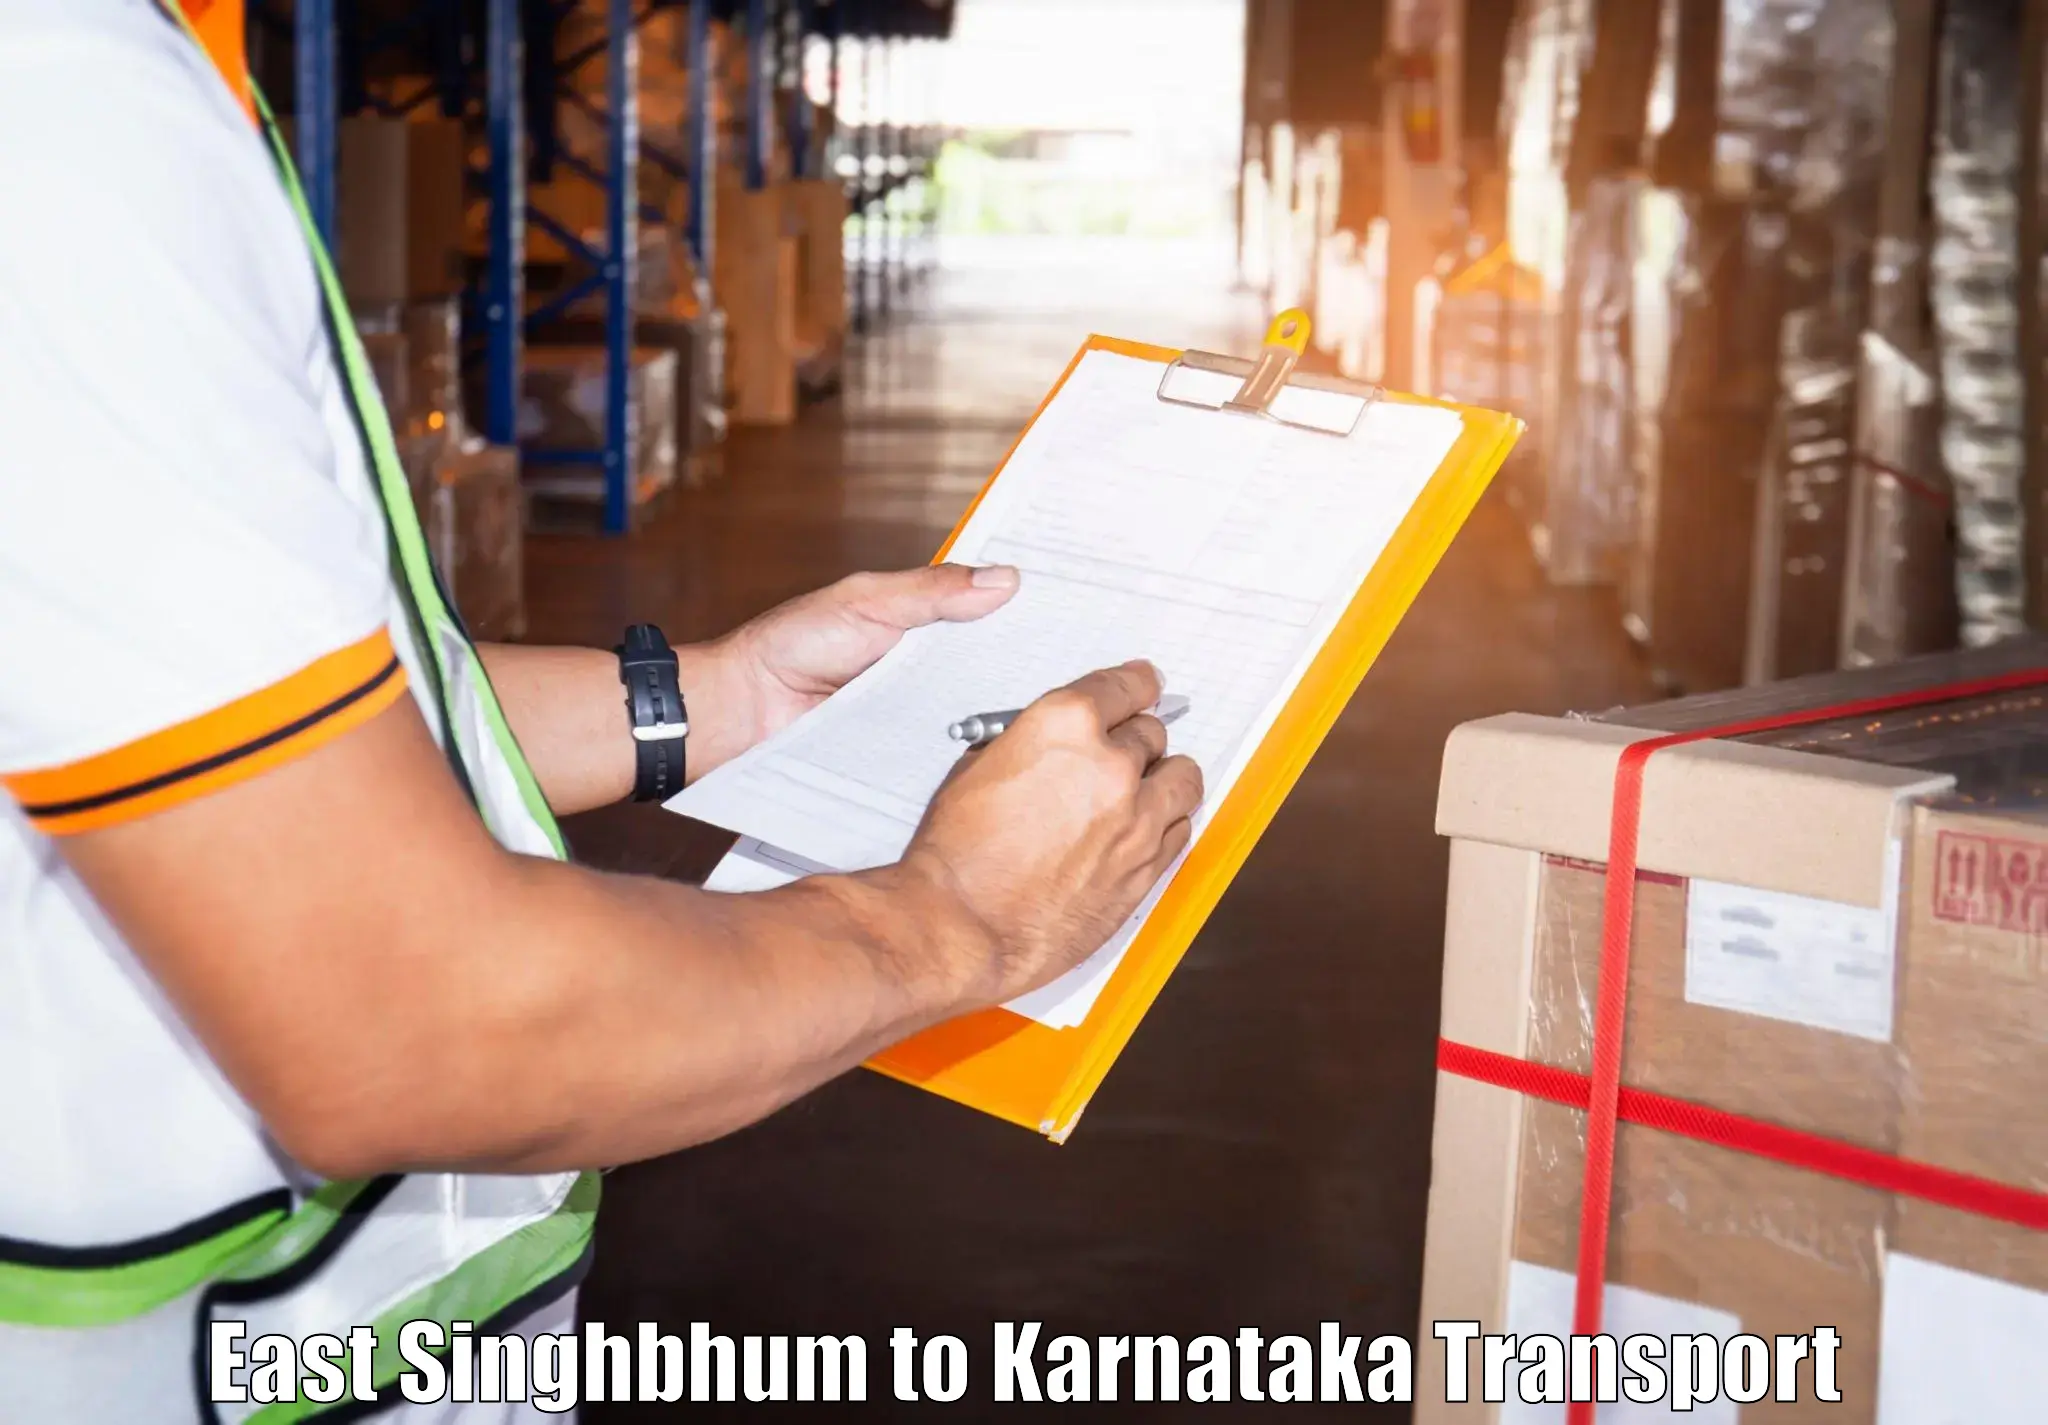 Interstate goods transport East Singhbhum to Chikkanayakanahalli